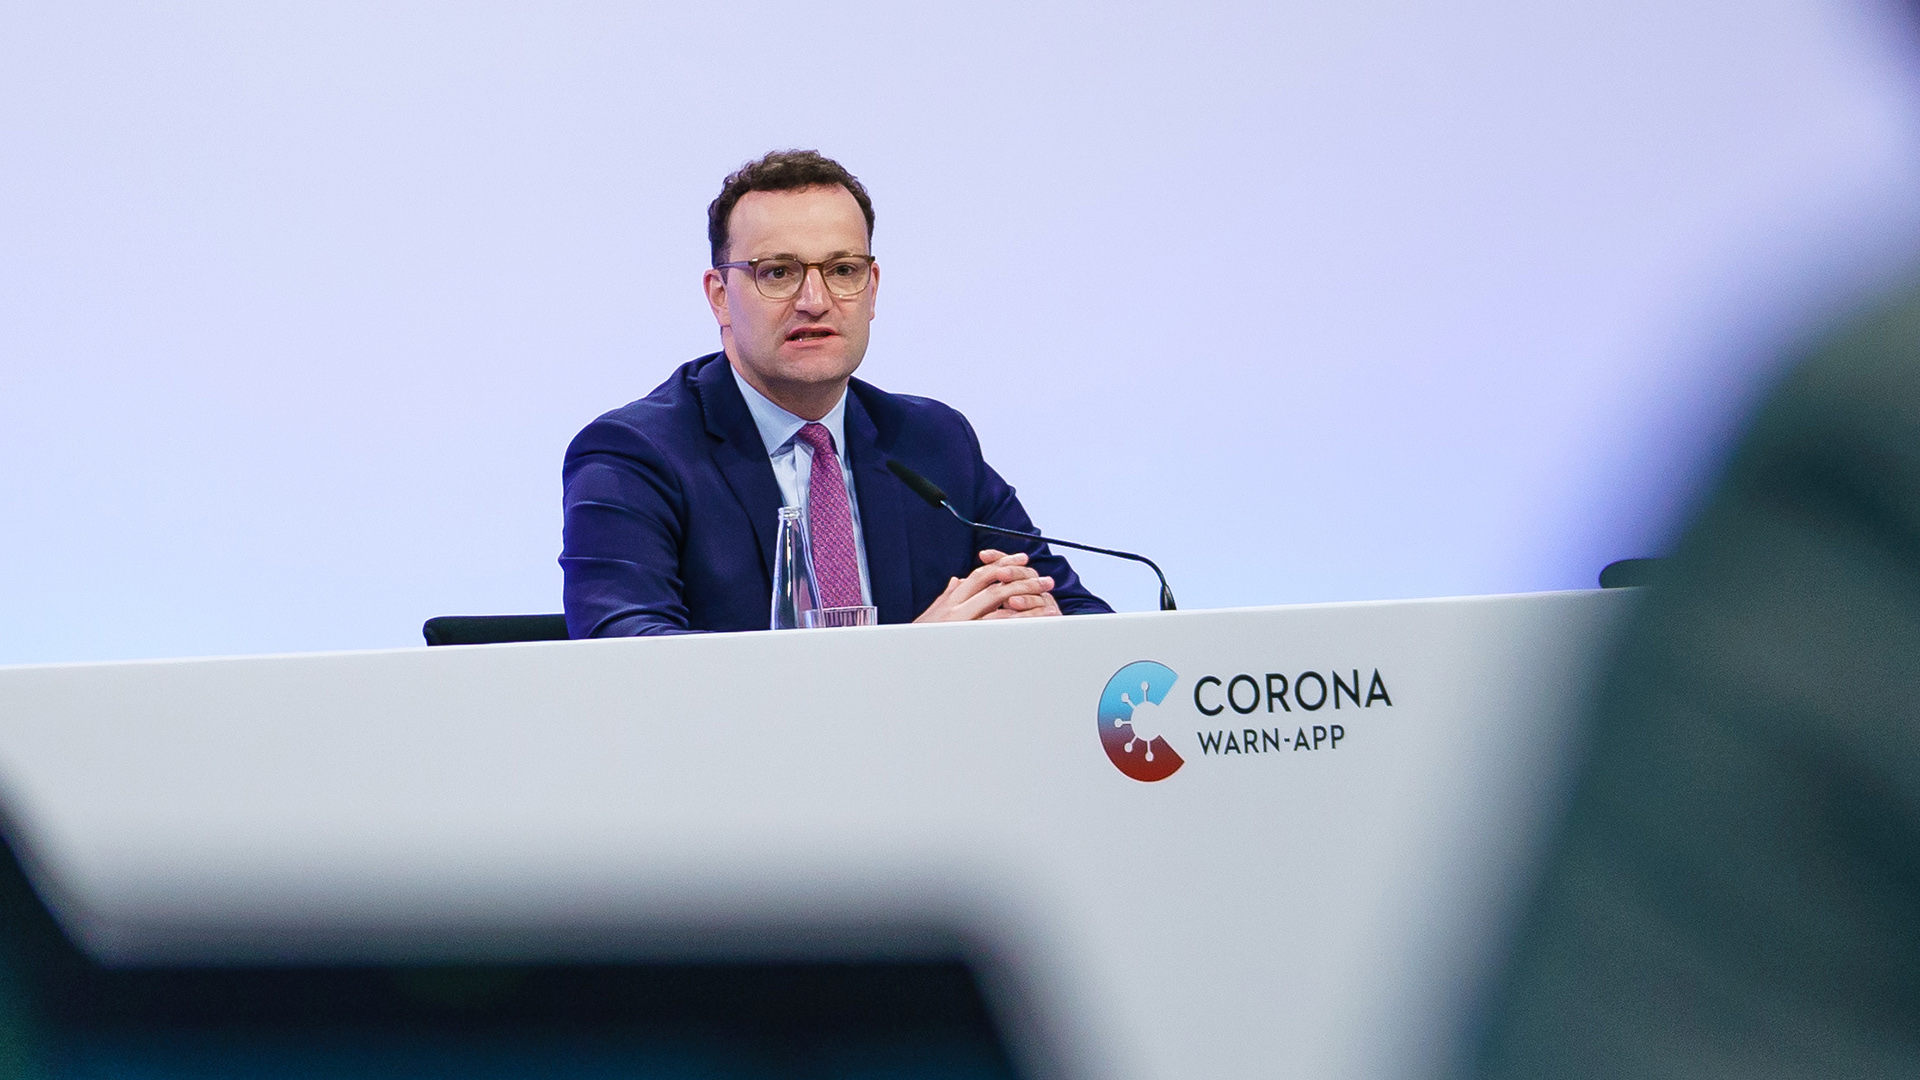 Jens Spahn bei der Pressekonferenz zur "Corona Warn-App" in Berlin. | CLEMENS BILAN/POOL/EPA-EFE/Shutt